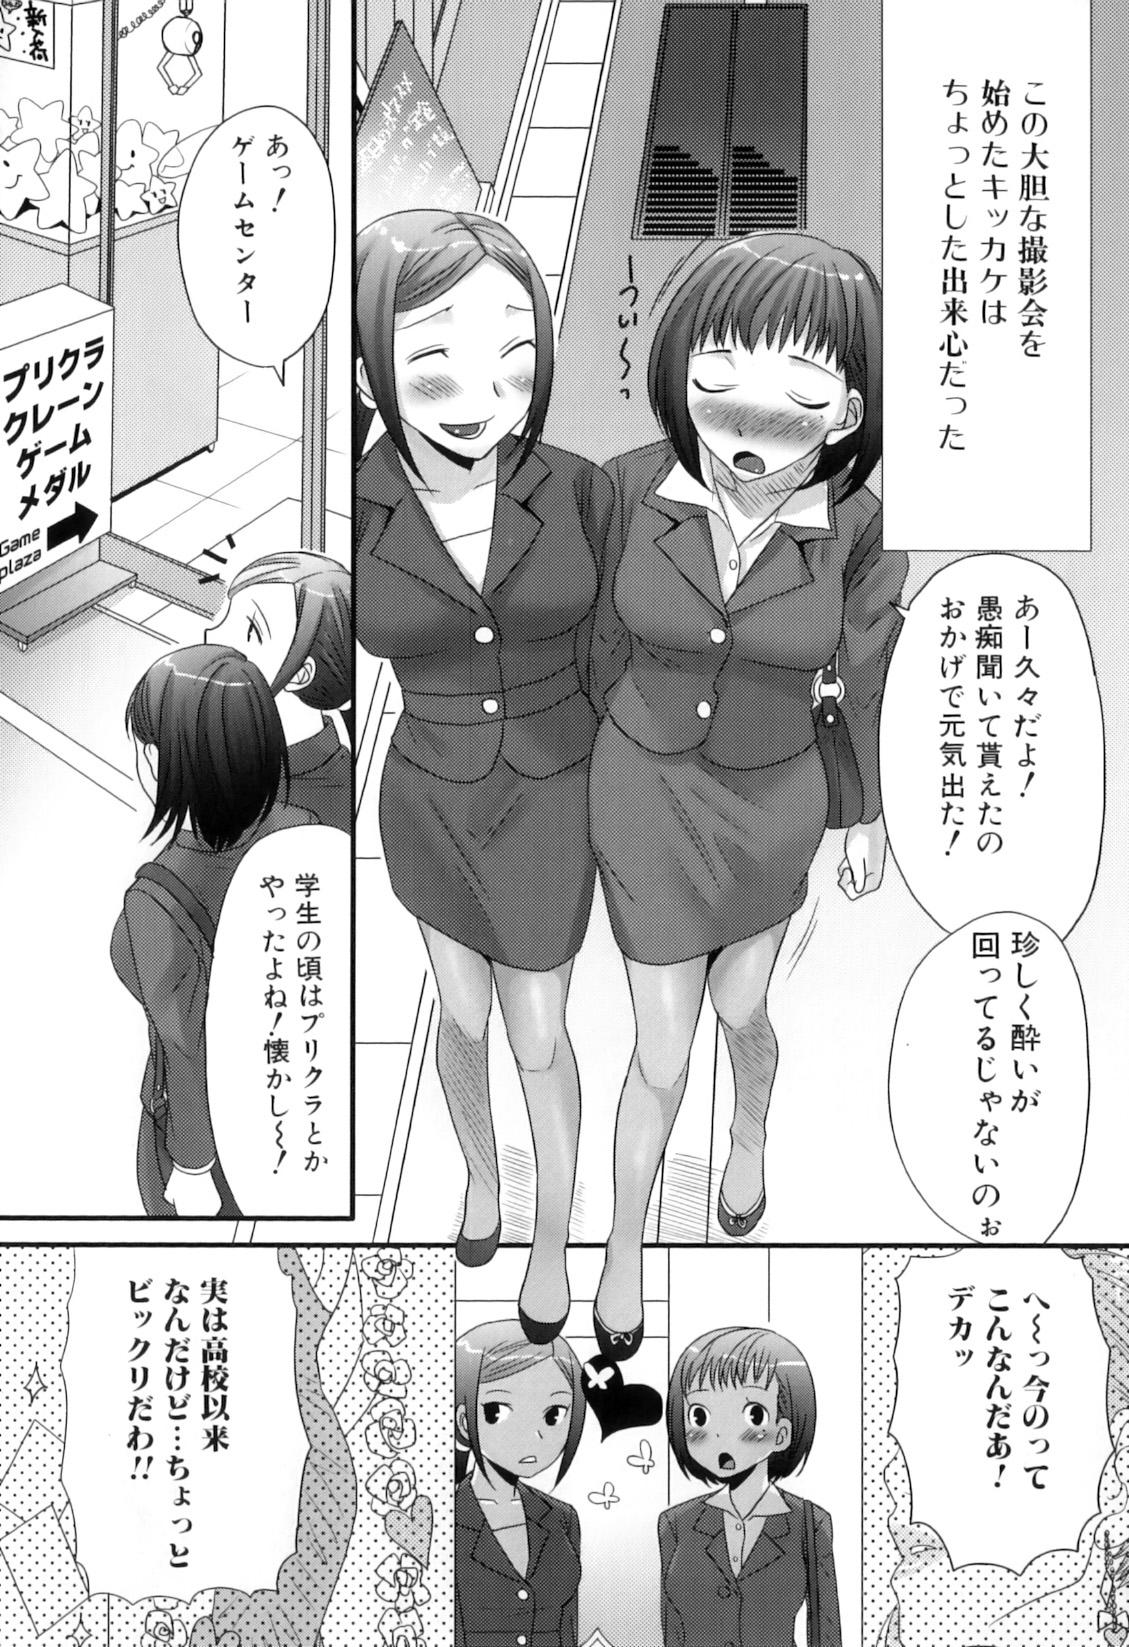 Puba Futanarikko Lovers 12 Girls - Page 10